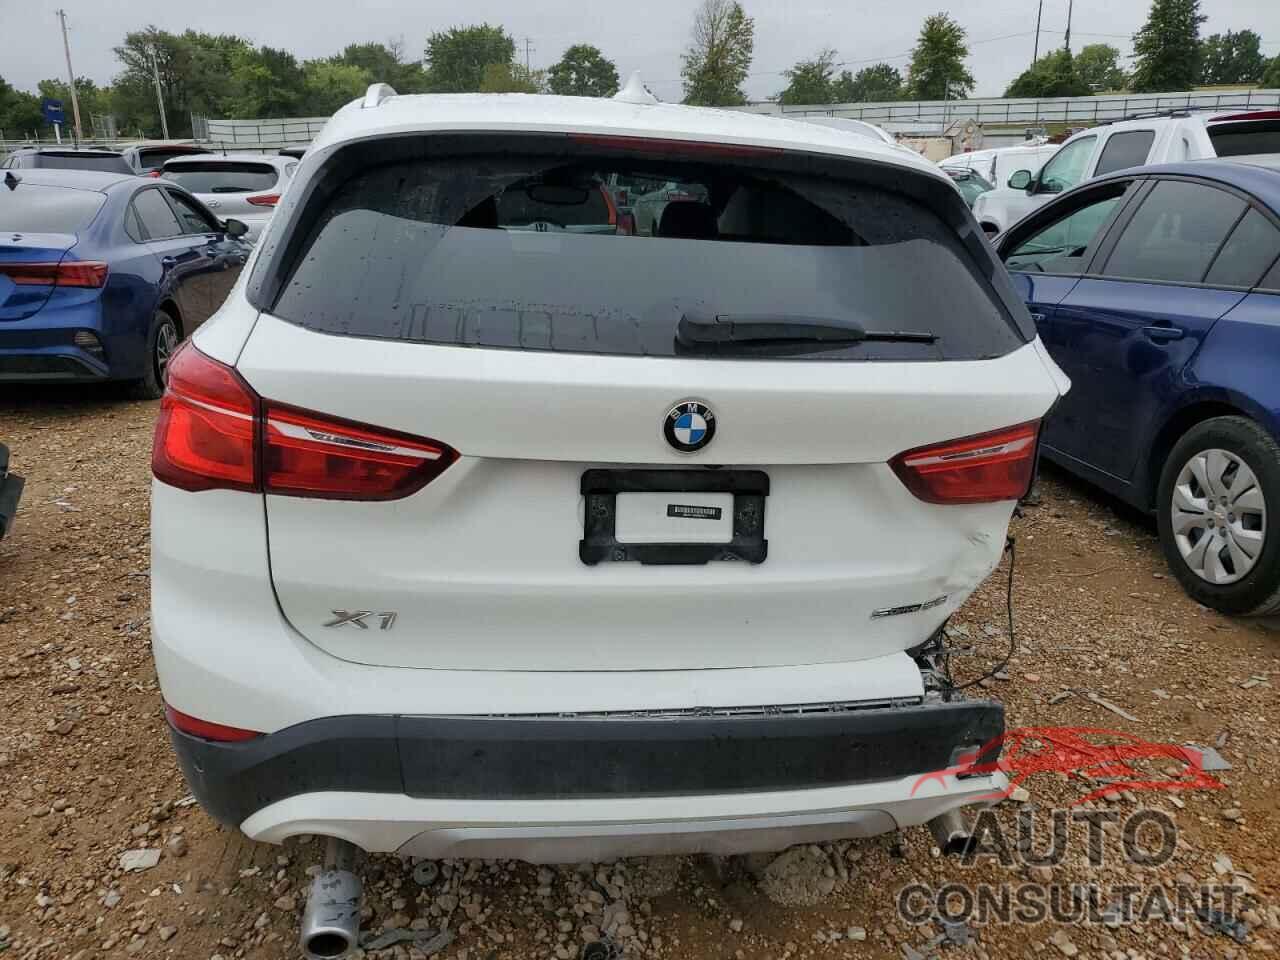 BMW X1 2021 - WBXJG7C01M5S95979